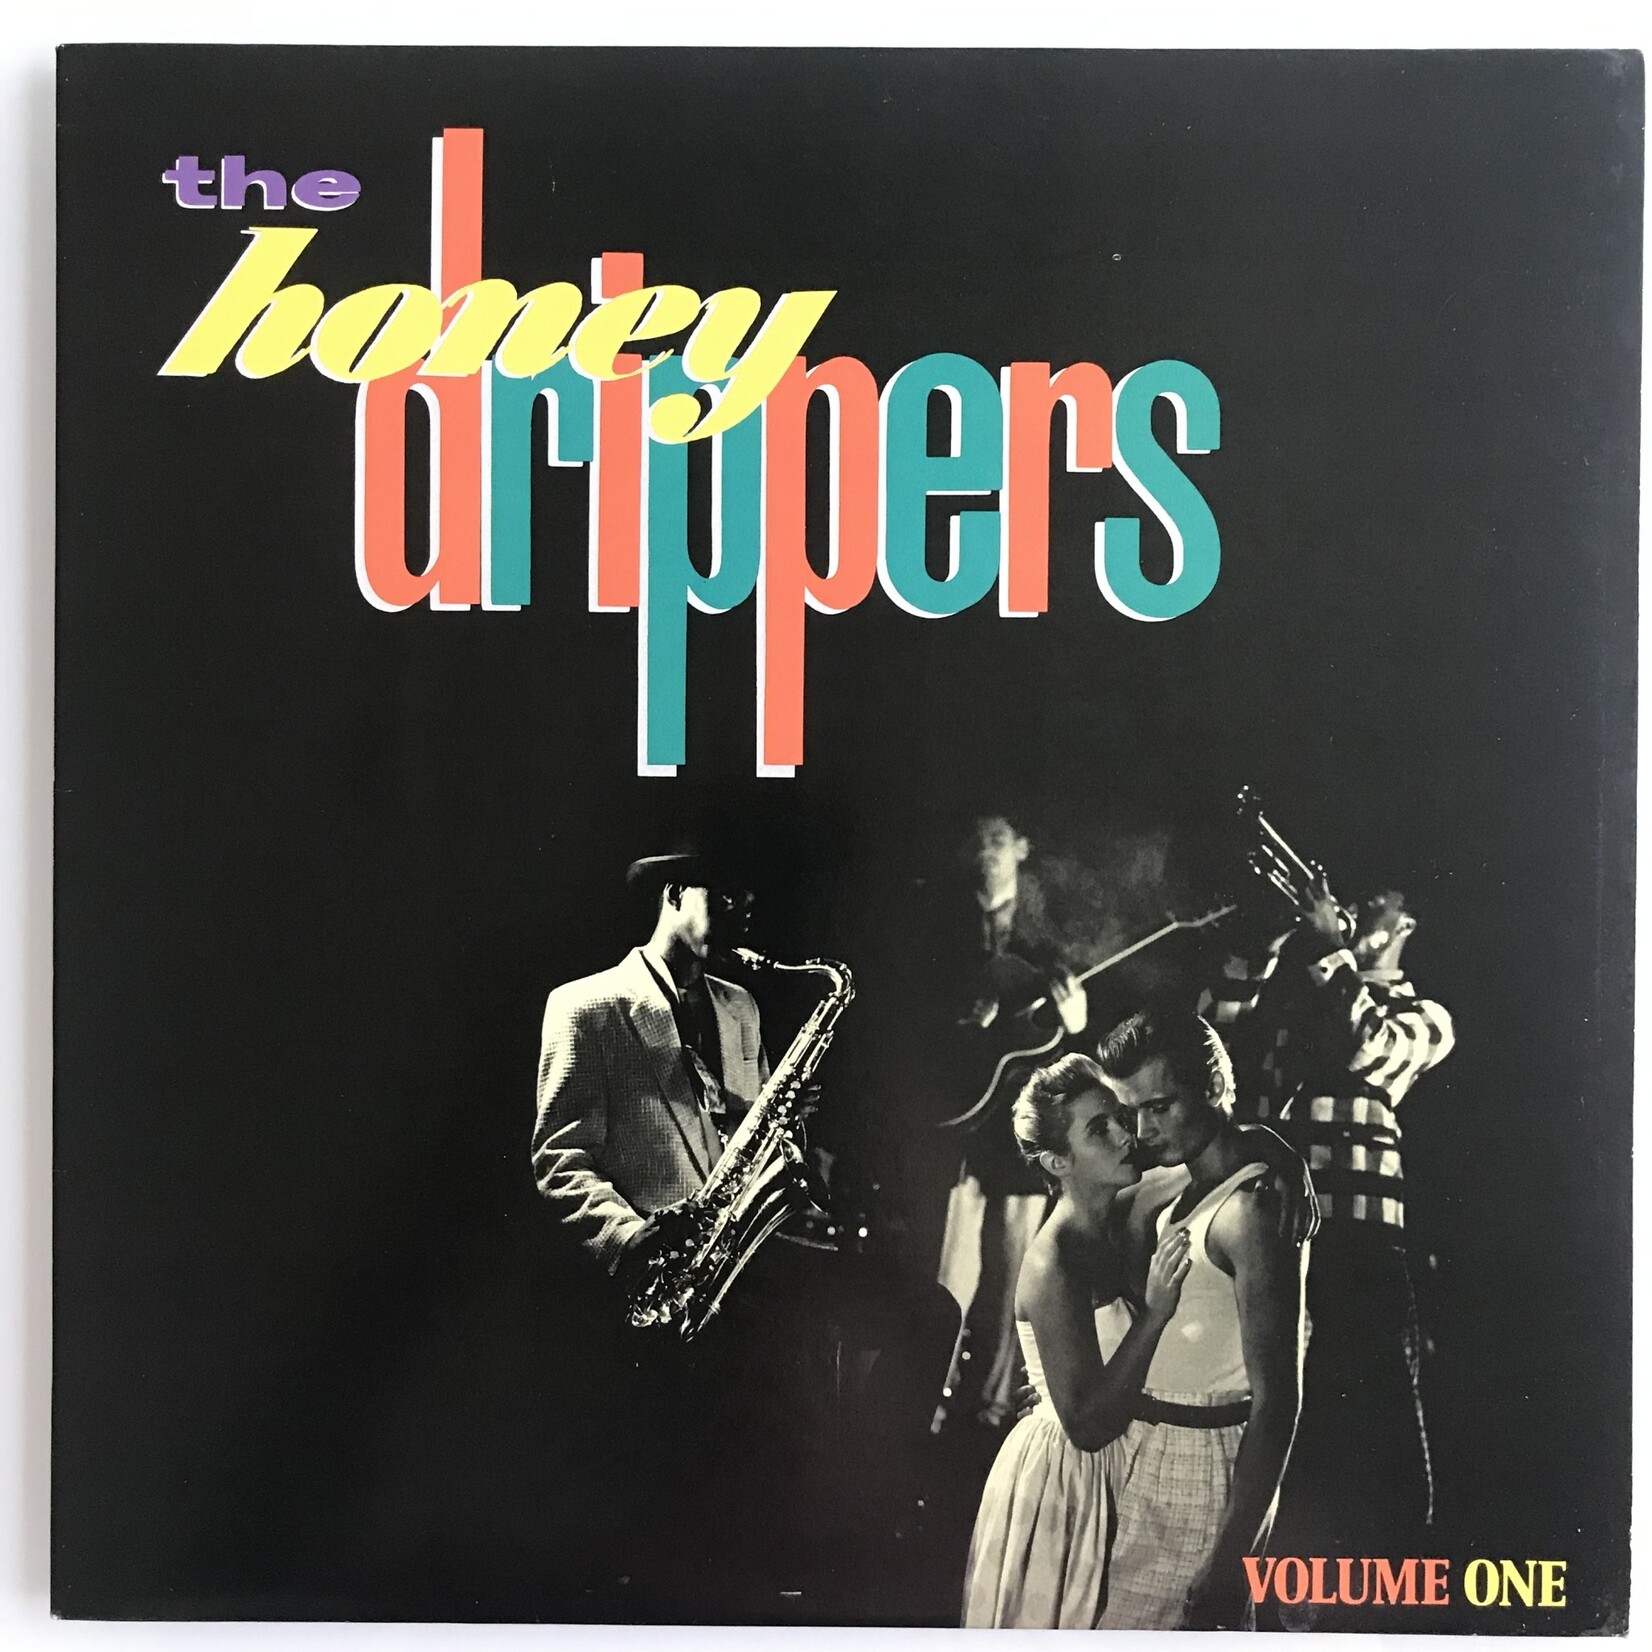 Honeydrippers - Volume One - Vinyl EP (USED)